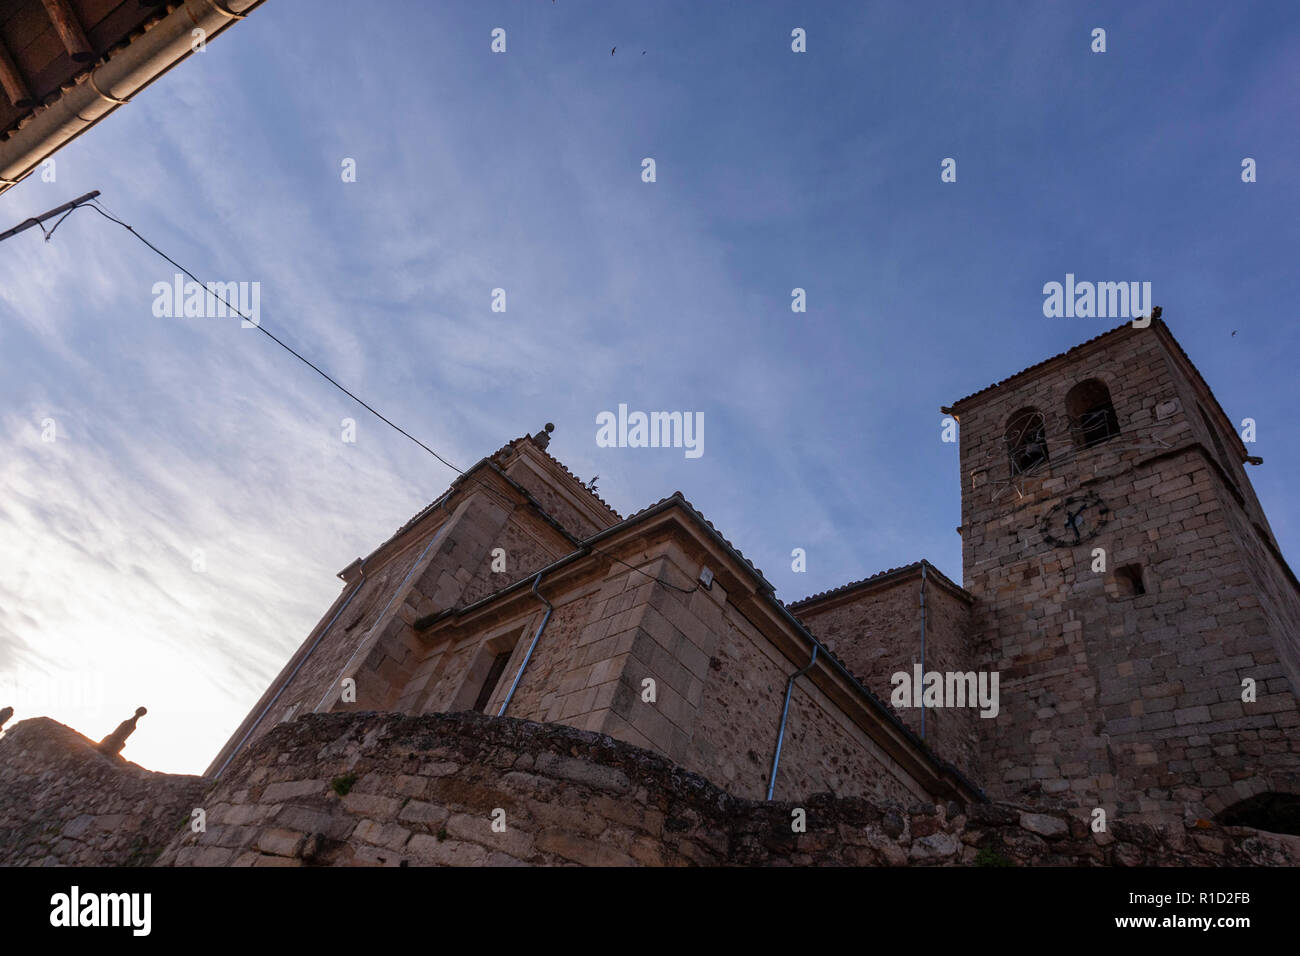 Hervas, Torre e iglesia de Santa María de Aguas, Caceres province, Extremadura, Spain Stock Photo